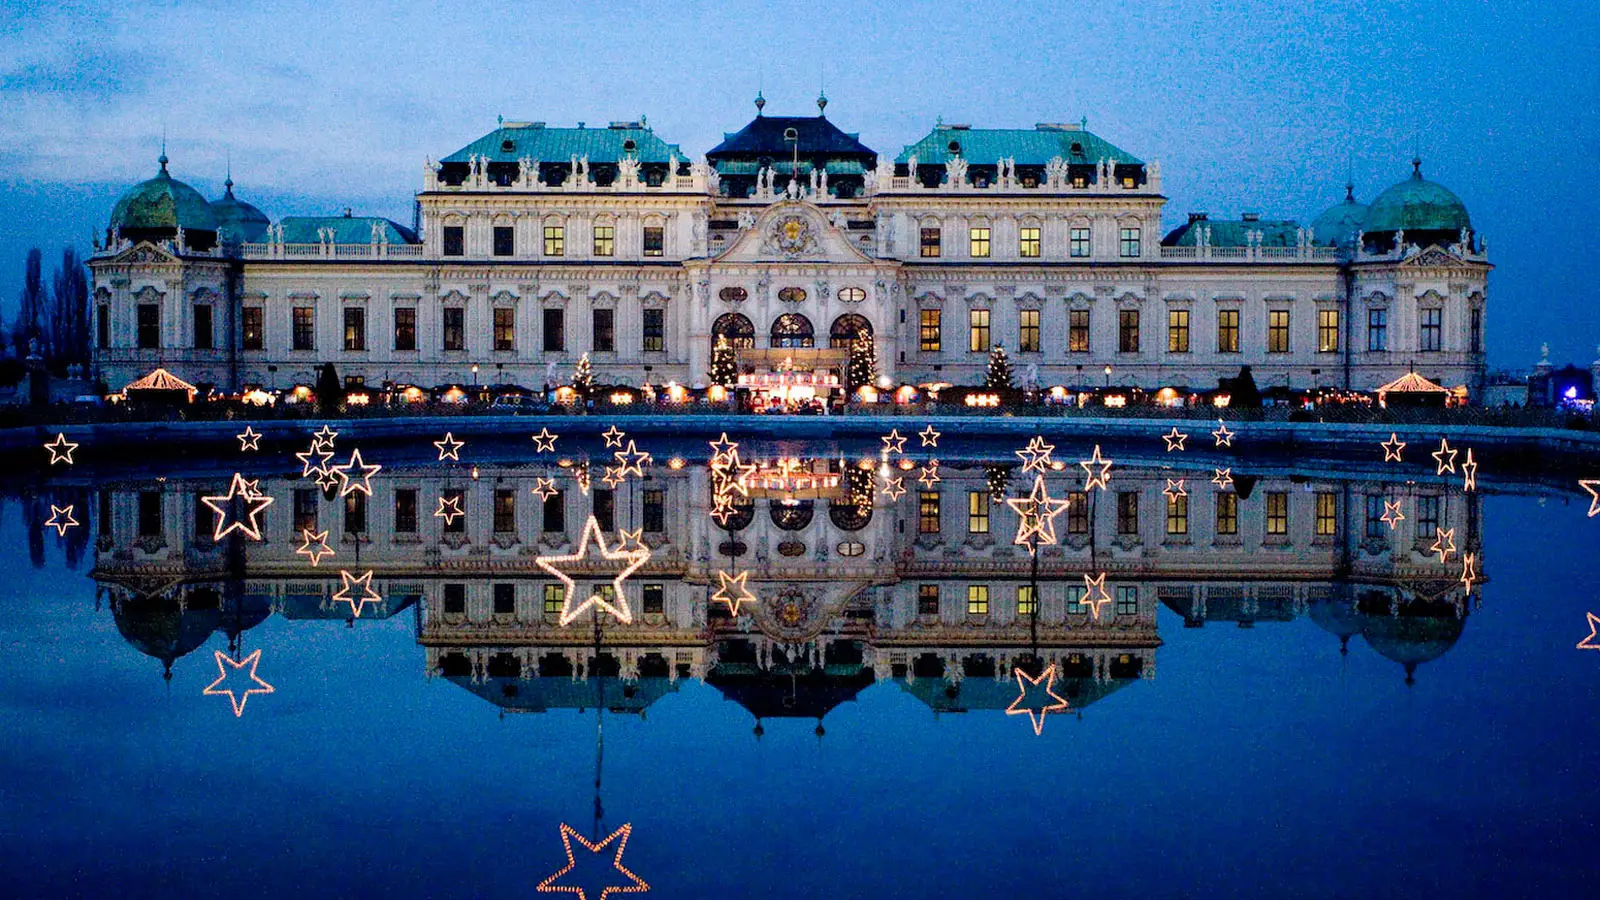 Weihnachtsdorf Schloß Belvedere | Weihnachten und Advent in Wien